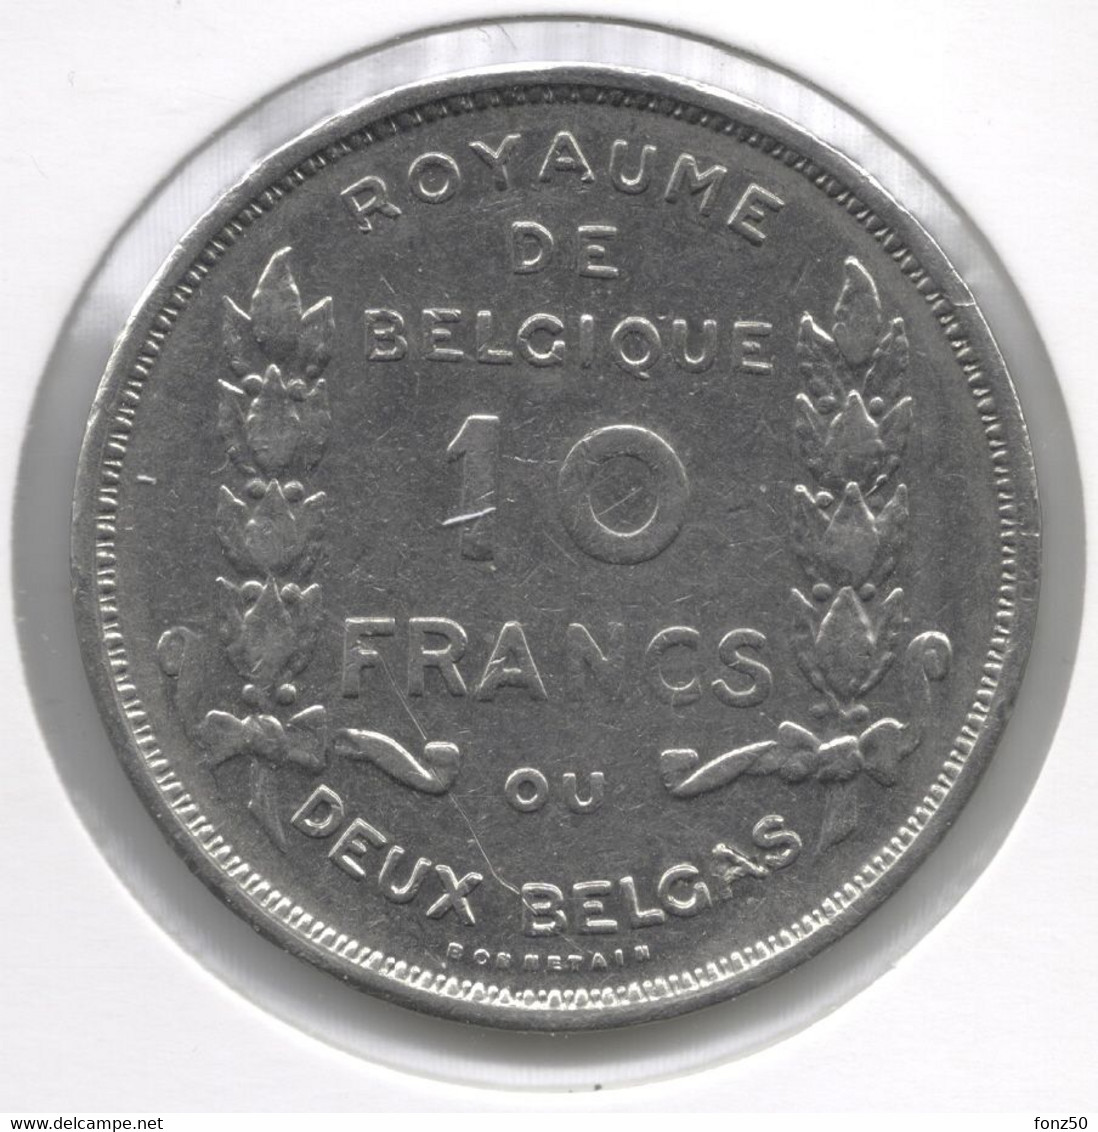 ALBERT I * 10 Frank / 2 Belga 1930 Frans  Pos A * Z.Fraai / Prachtig  * Nr 8934 - 10 Francs & 2 Belgas